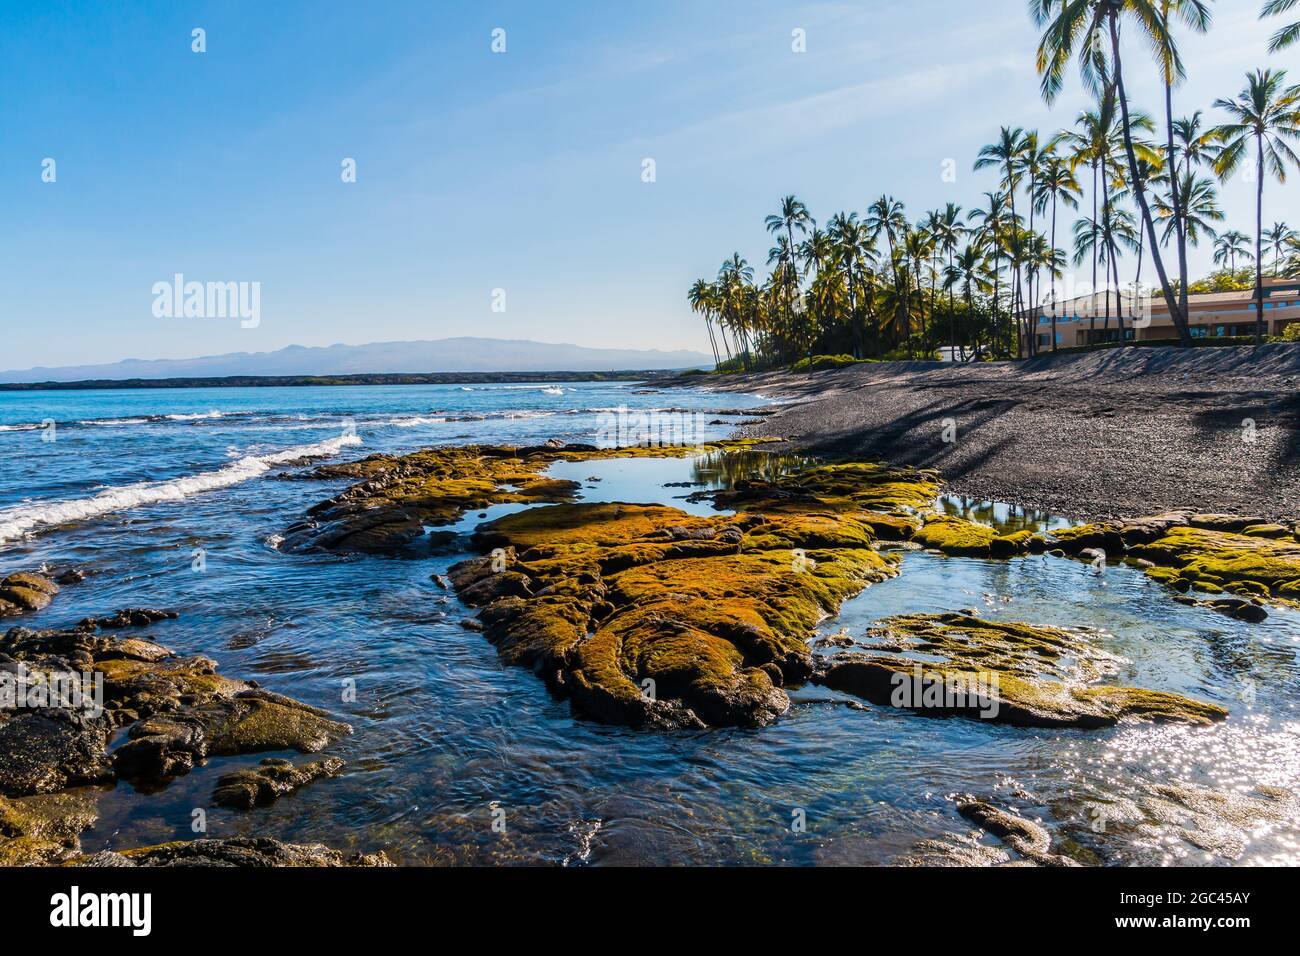 Piscinas de marea y arrecife de lava expuesto en Kiholo Bay Beach, Hawaii Island, Hawaii, Estados Unidos Foto de stock